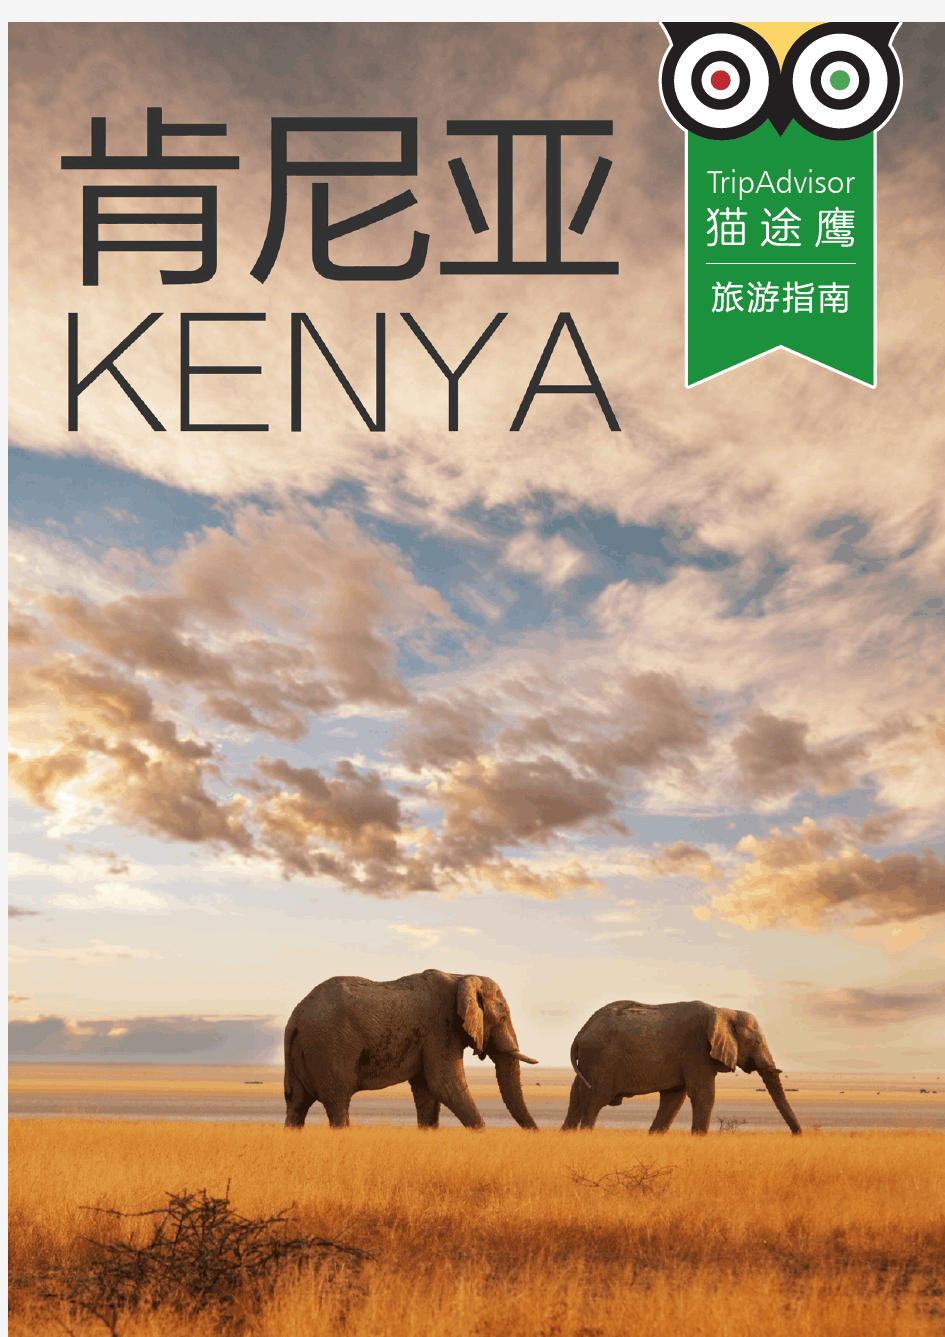 肯尼亚旅游指南下载版 - TripAdvisor猫途鹰